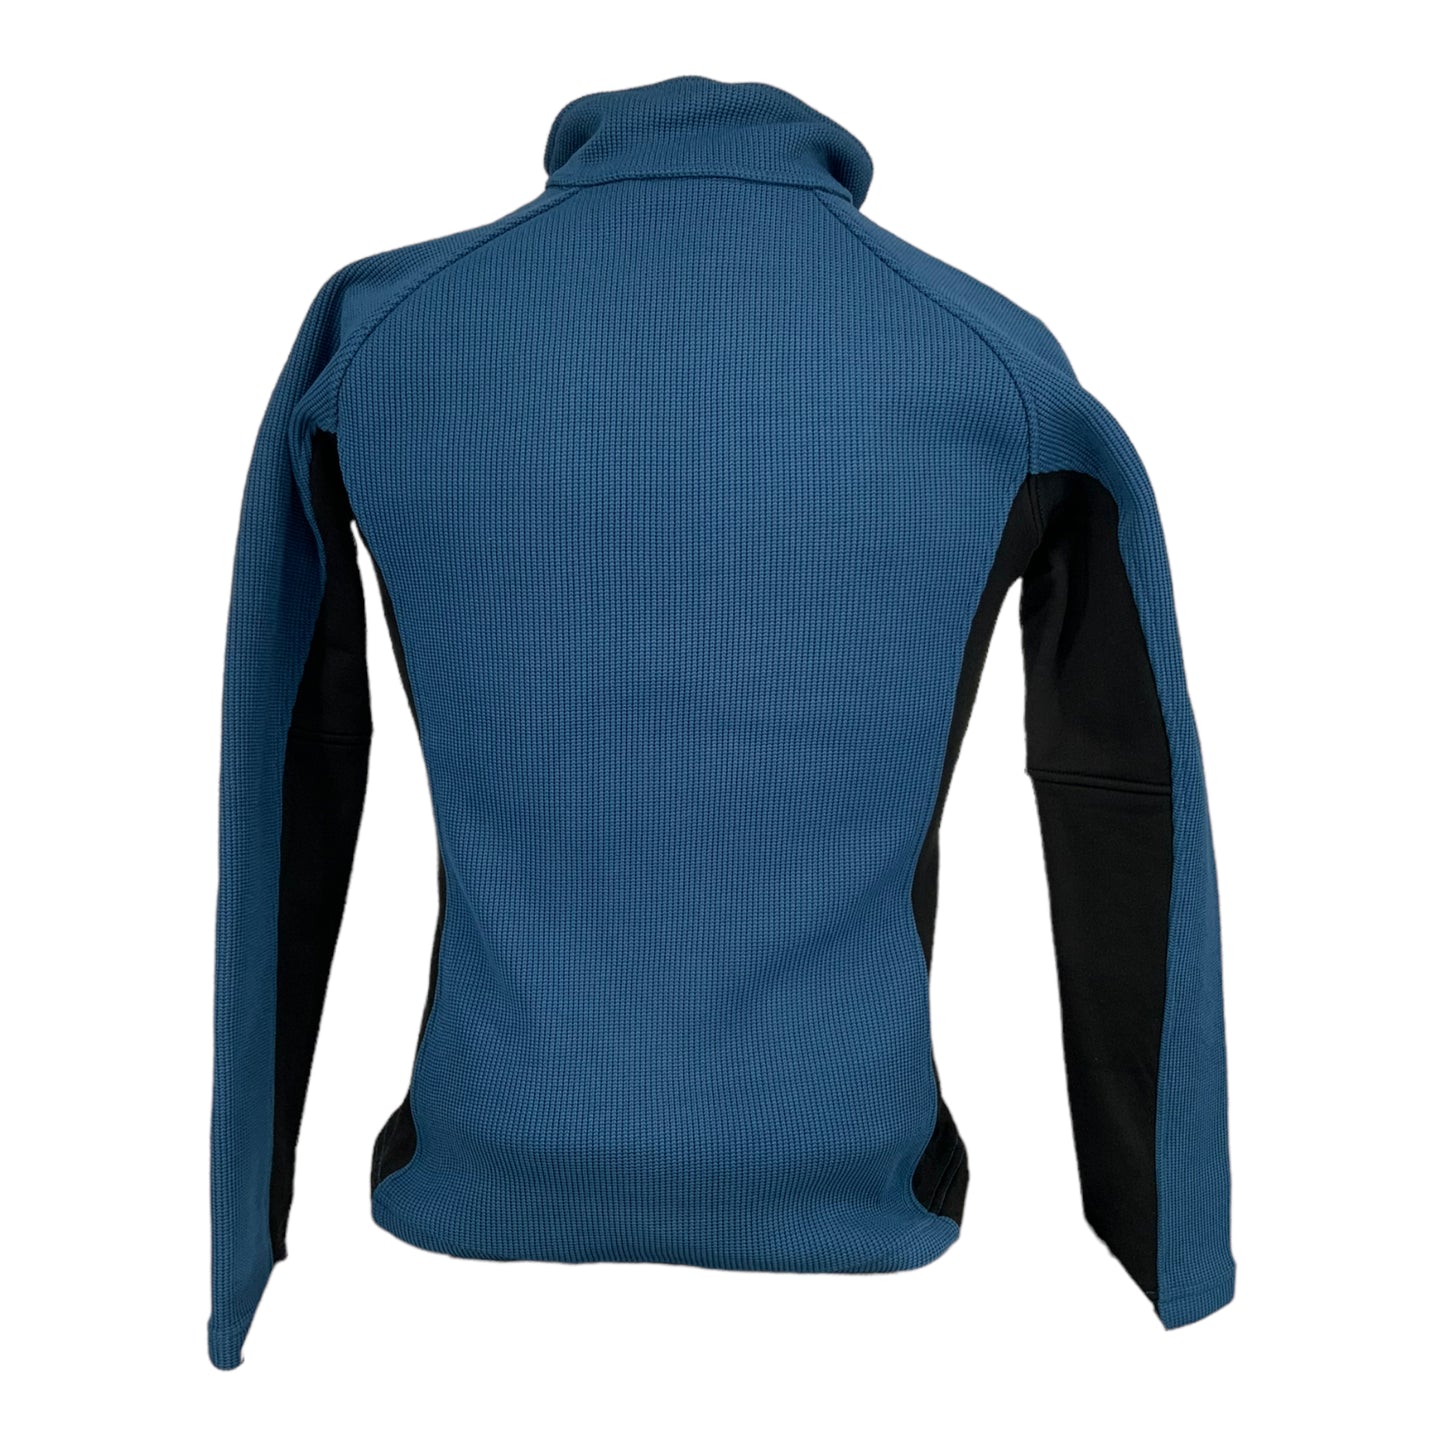 Women's Jacket Full Zipper Coarse Weave Fleece (Blue)